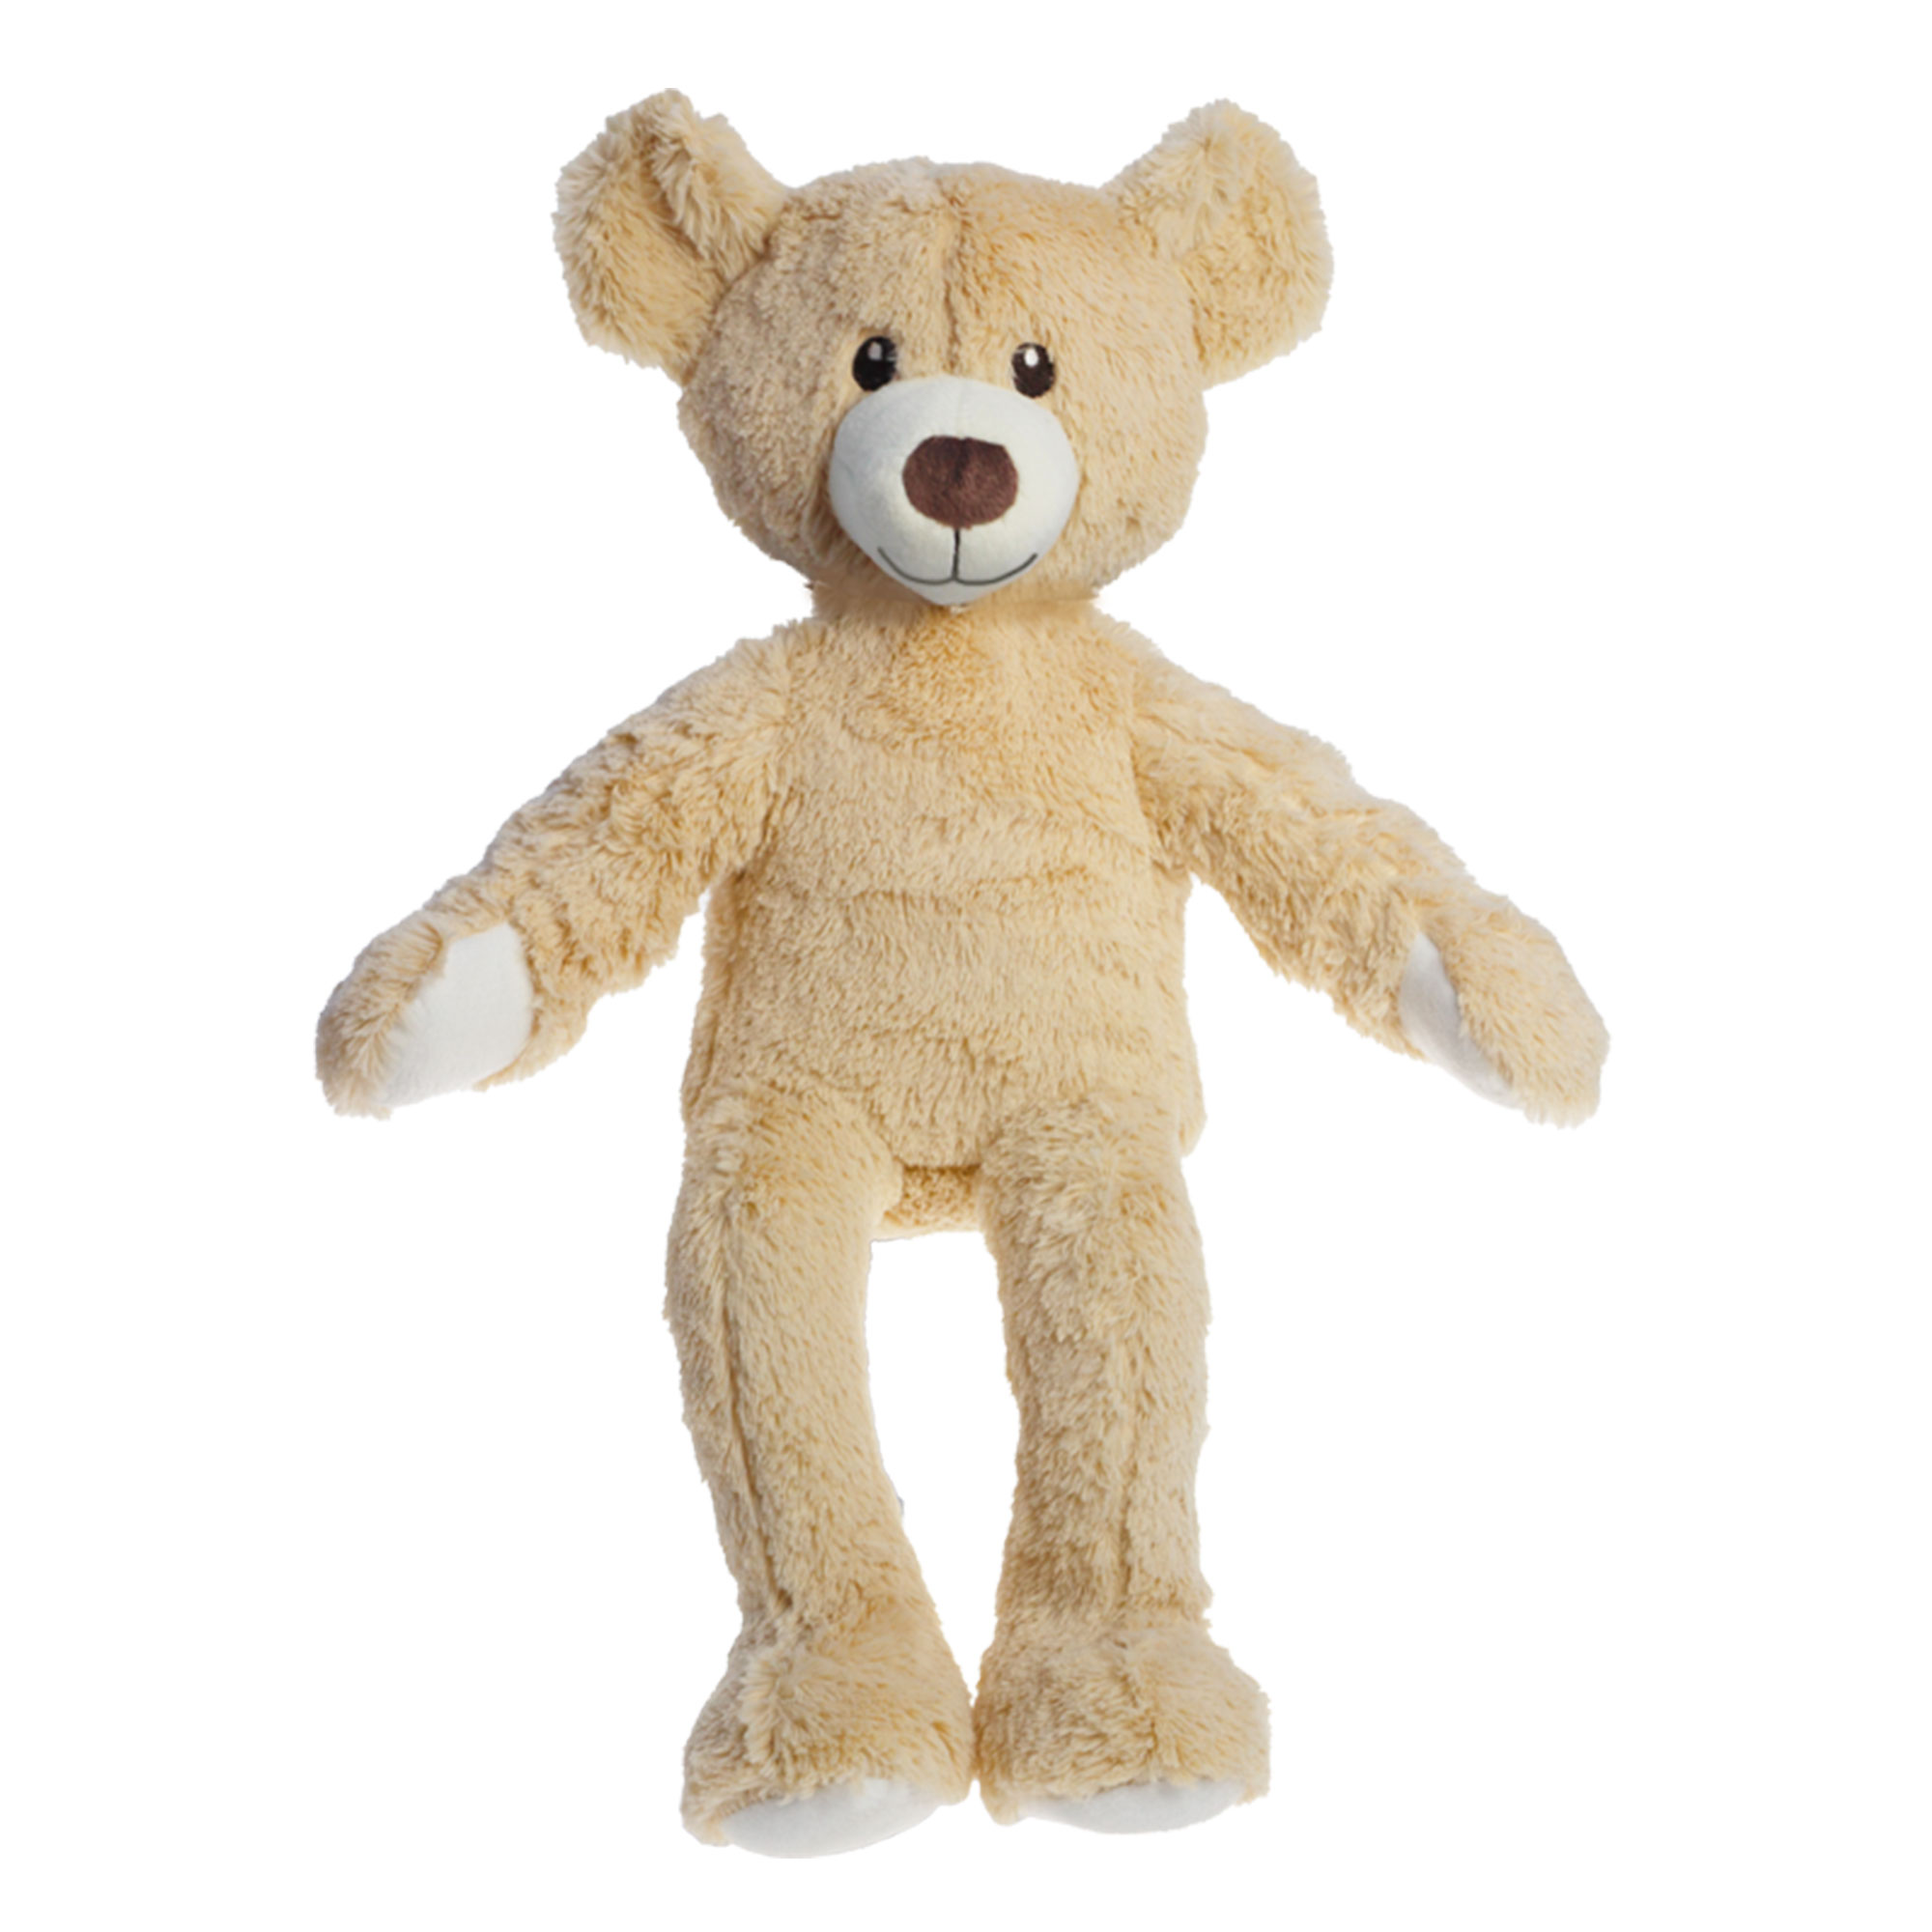 Kuscheltier "Teddy", 42 cm, ohne Bekleidung und Verpackung